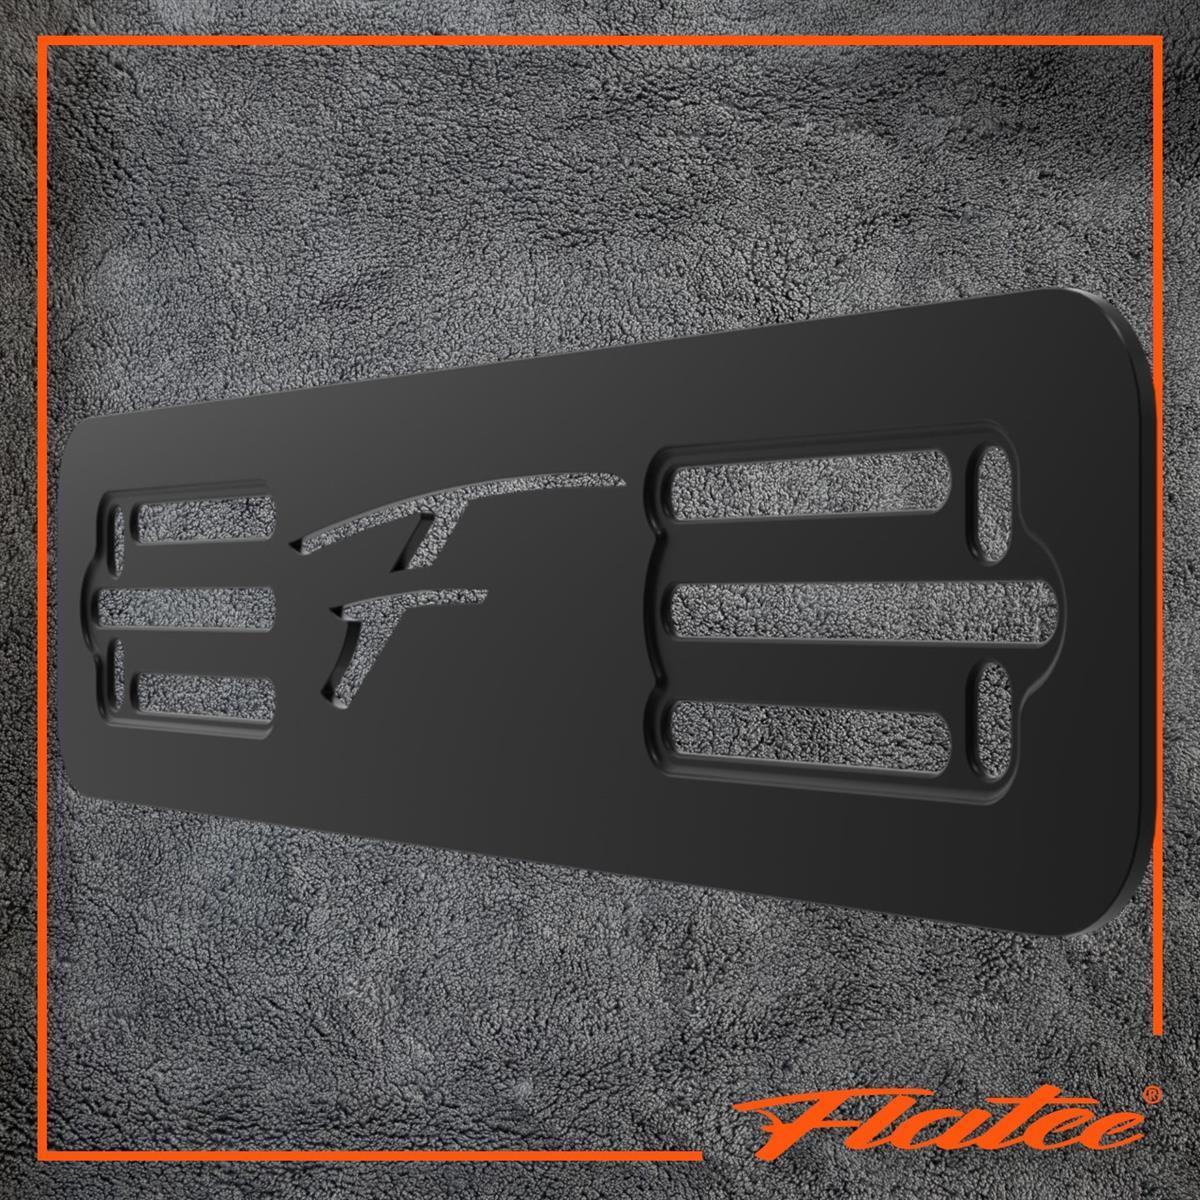 Flatee Montageplatte für Fahrzeug Front (7x29cm) – Aluminium schwarz eloxiert